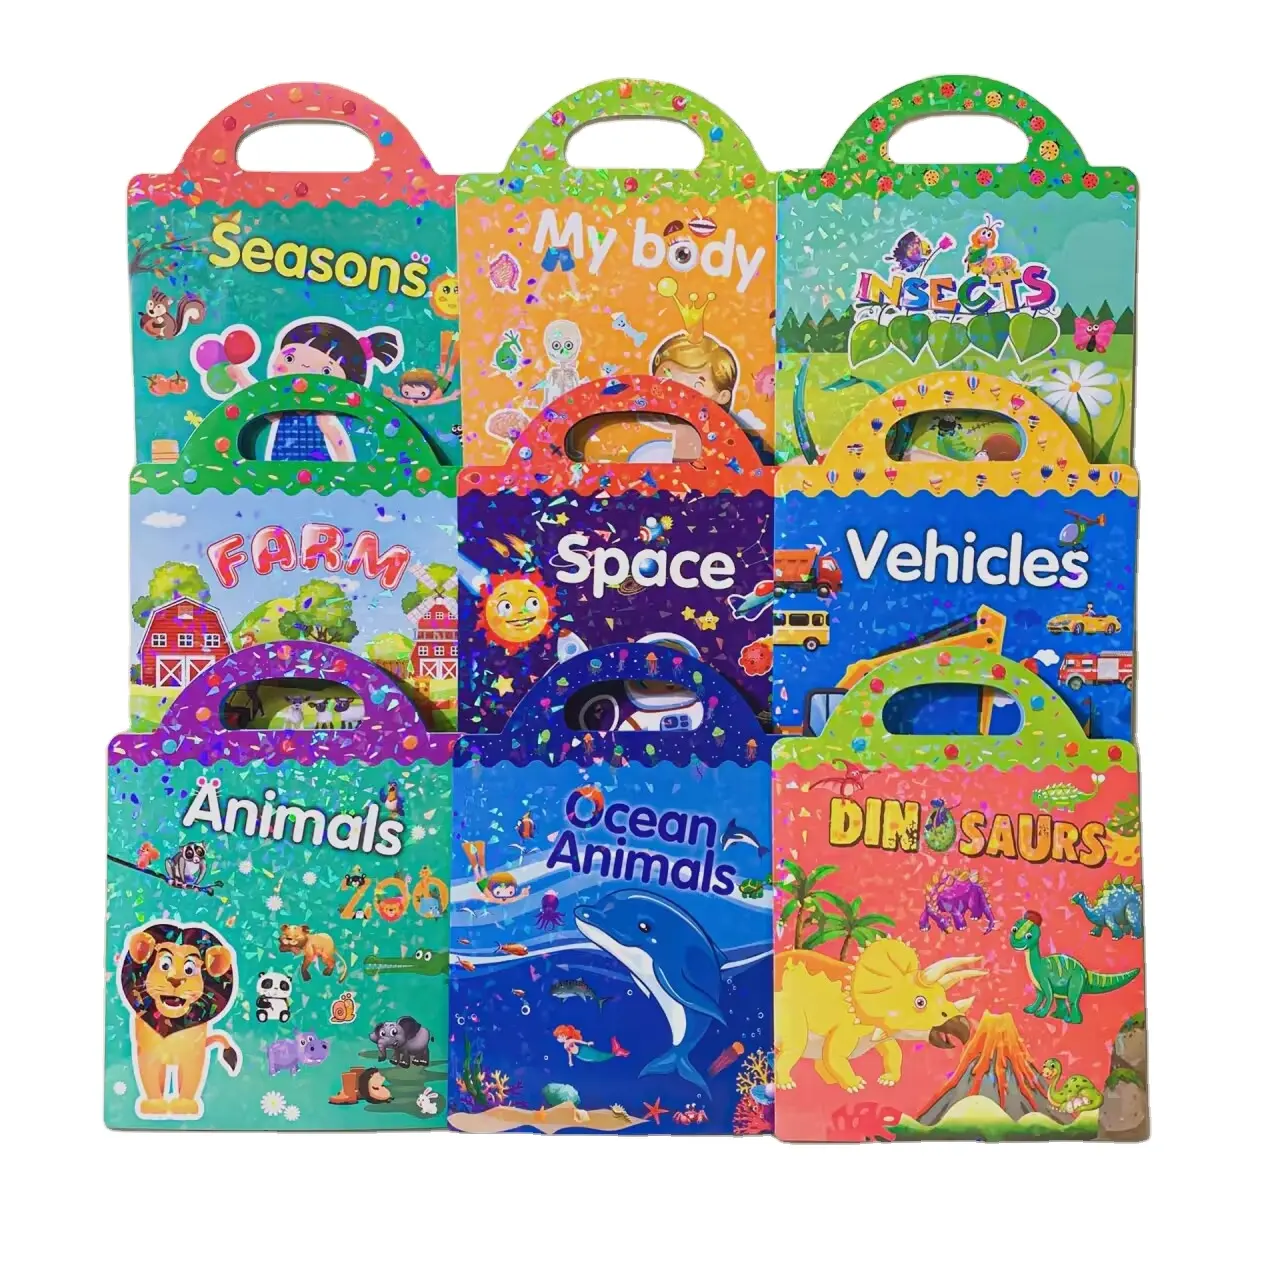 Serviço de impressão personalizada projetos livro da etiqueta para crianças 2 15-4 Preschool Educação Aprendizagem Toy reutilizável adesivo livro